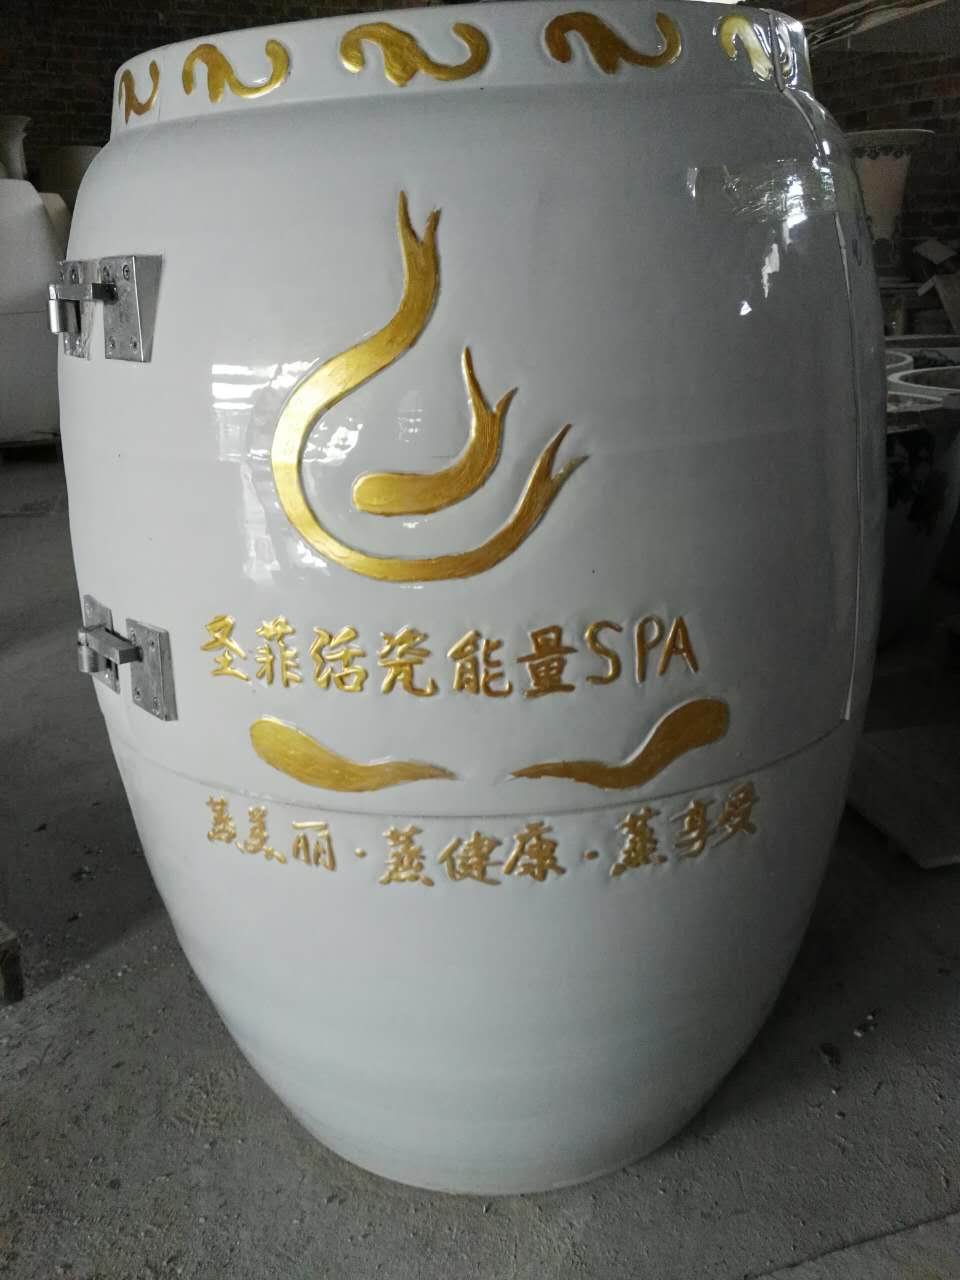 磁蒸负离子养生翁 陶瓷养生瓮 圣菲活瓷能量养生缸养生翁生产厂家